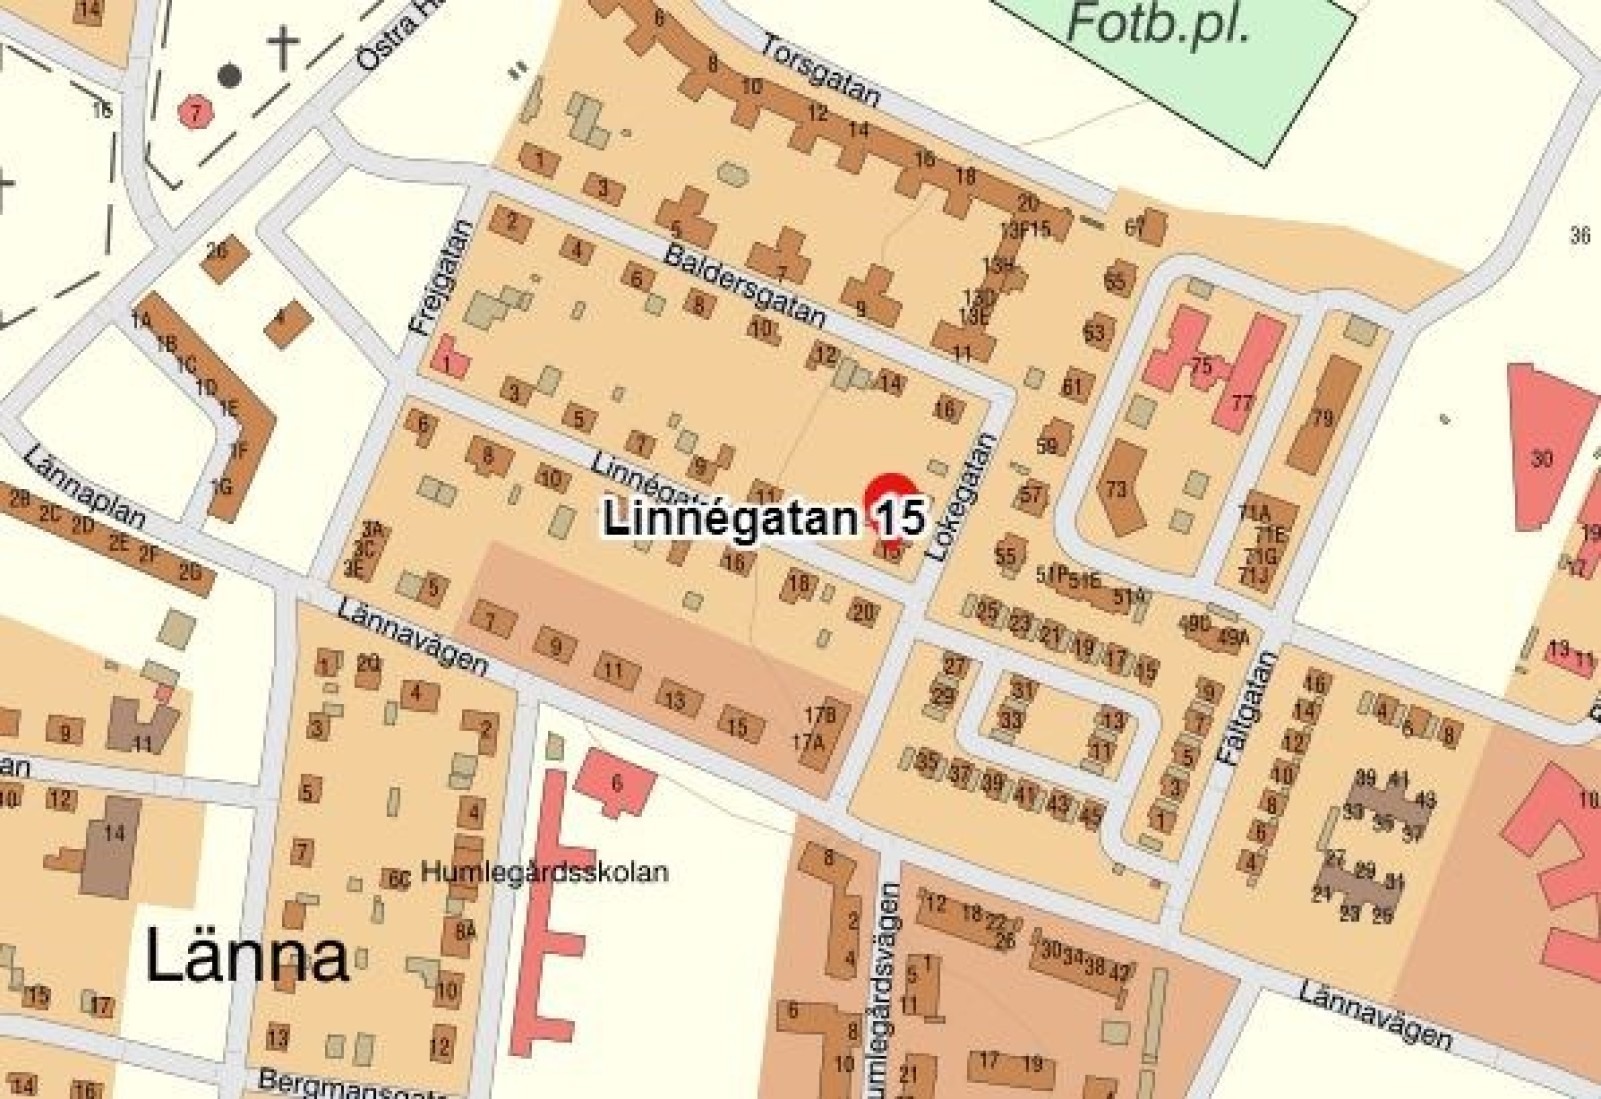  Linnégatan 15